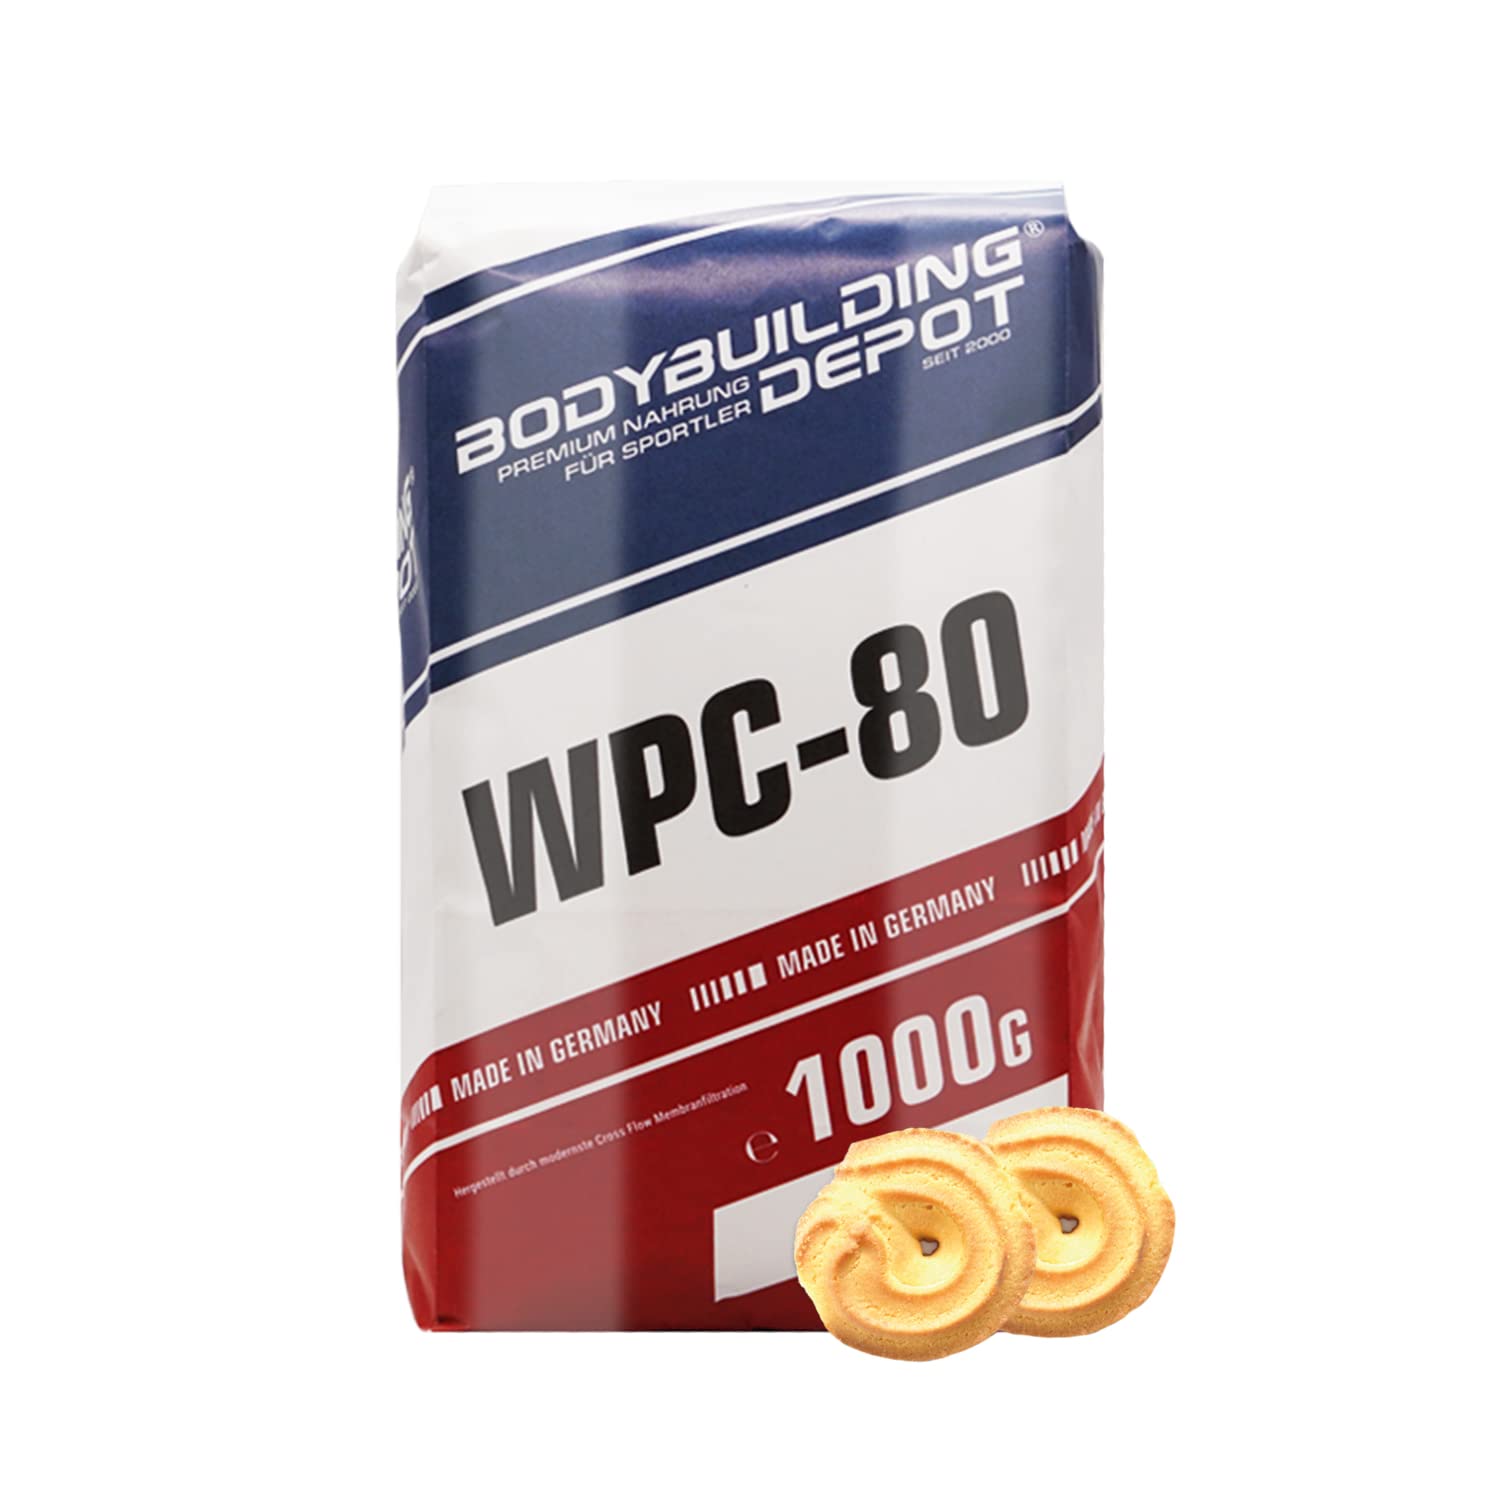 Bodybuilding Depot Whey Protein Pulver 1kg - Butterkeks | umweltfreundlich in Papier verpackt